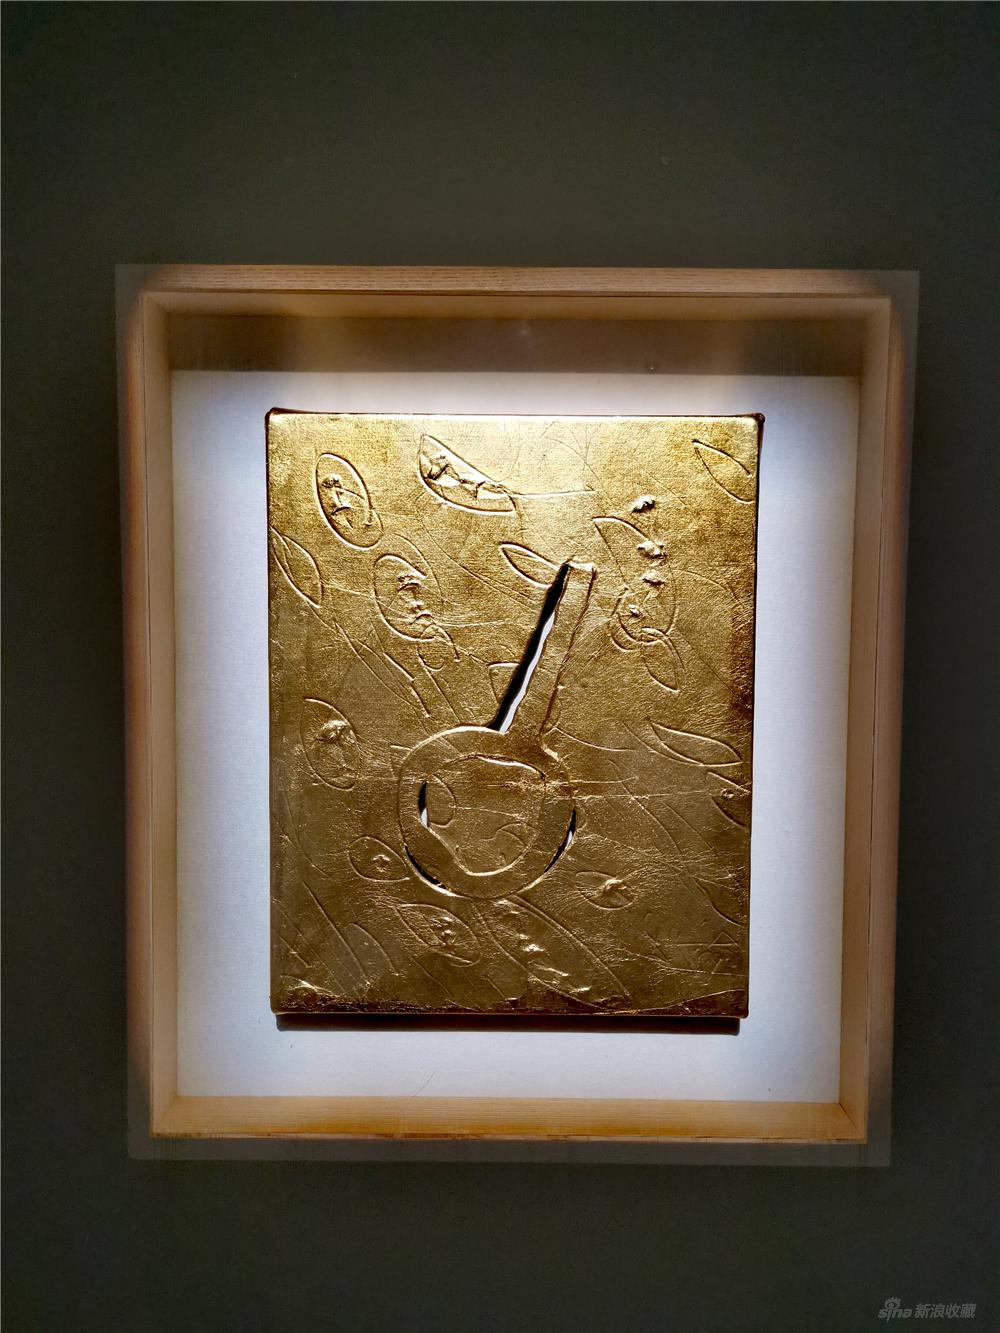 关根伸夫《手镜》；27.5x22.3cm；鳥の子纸、金箔；1989；日本画廊保证证书